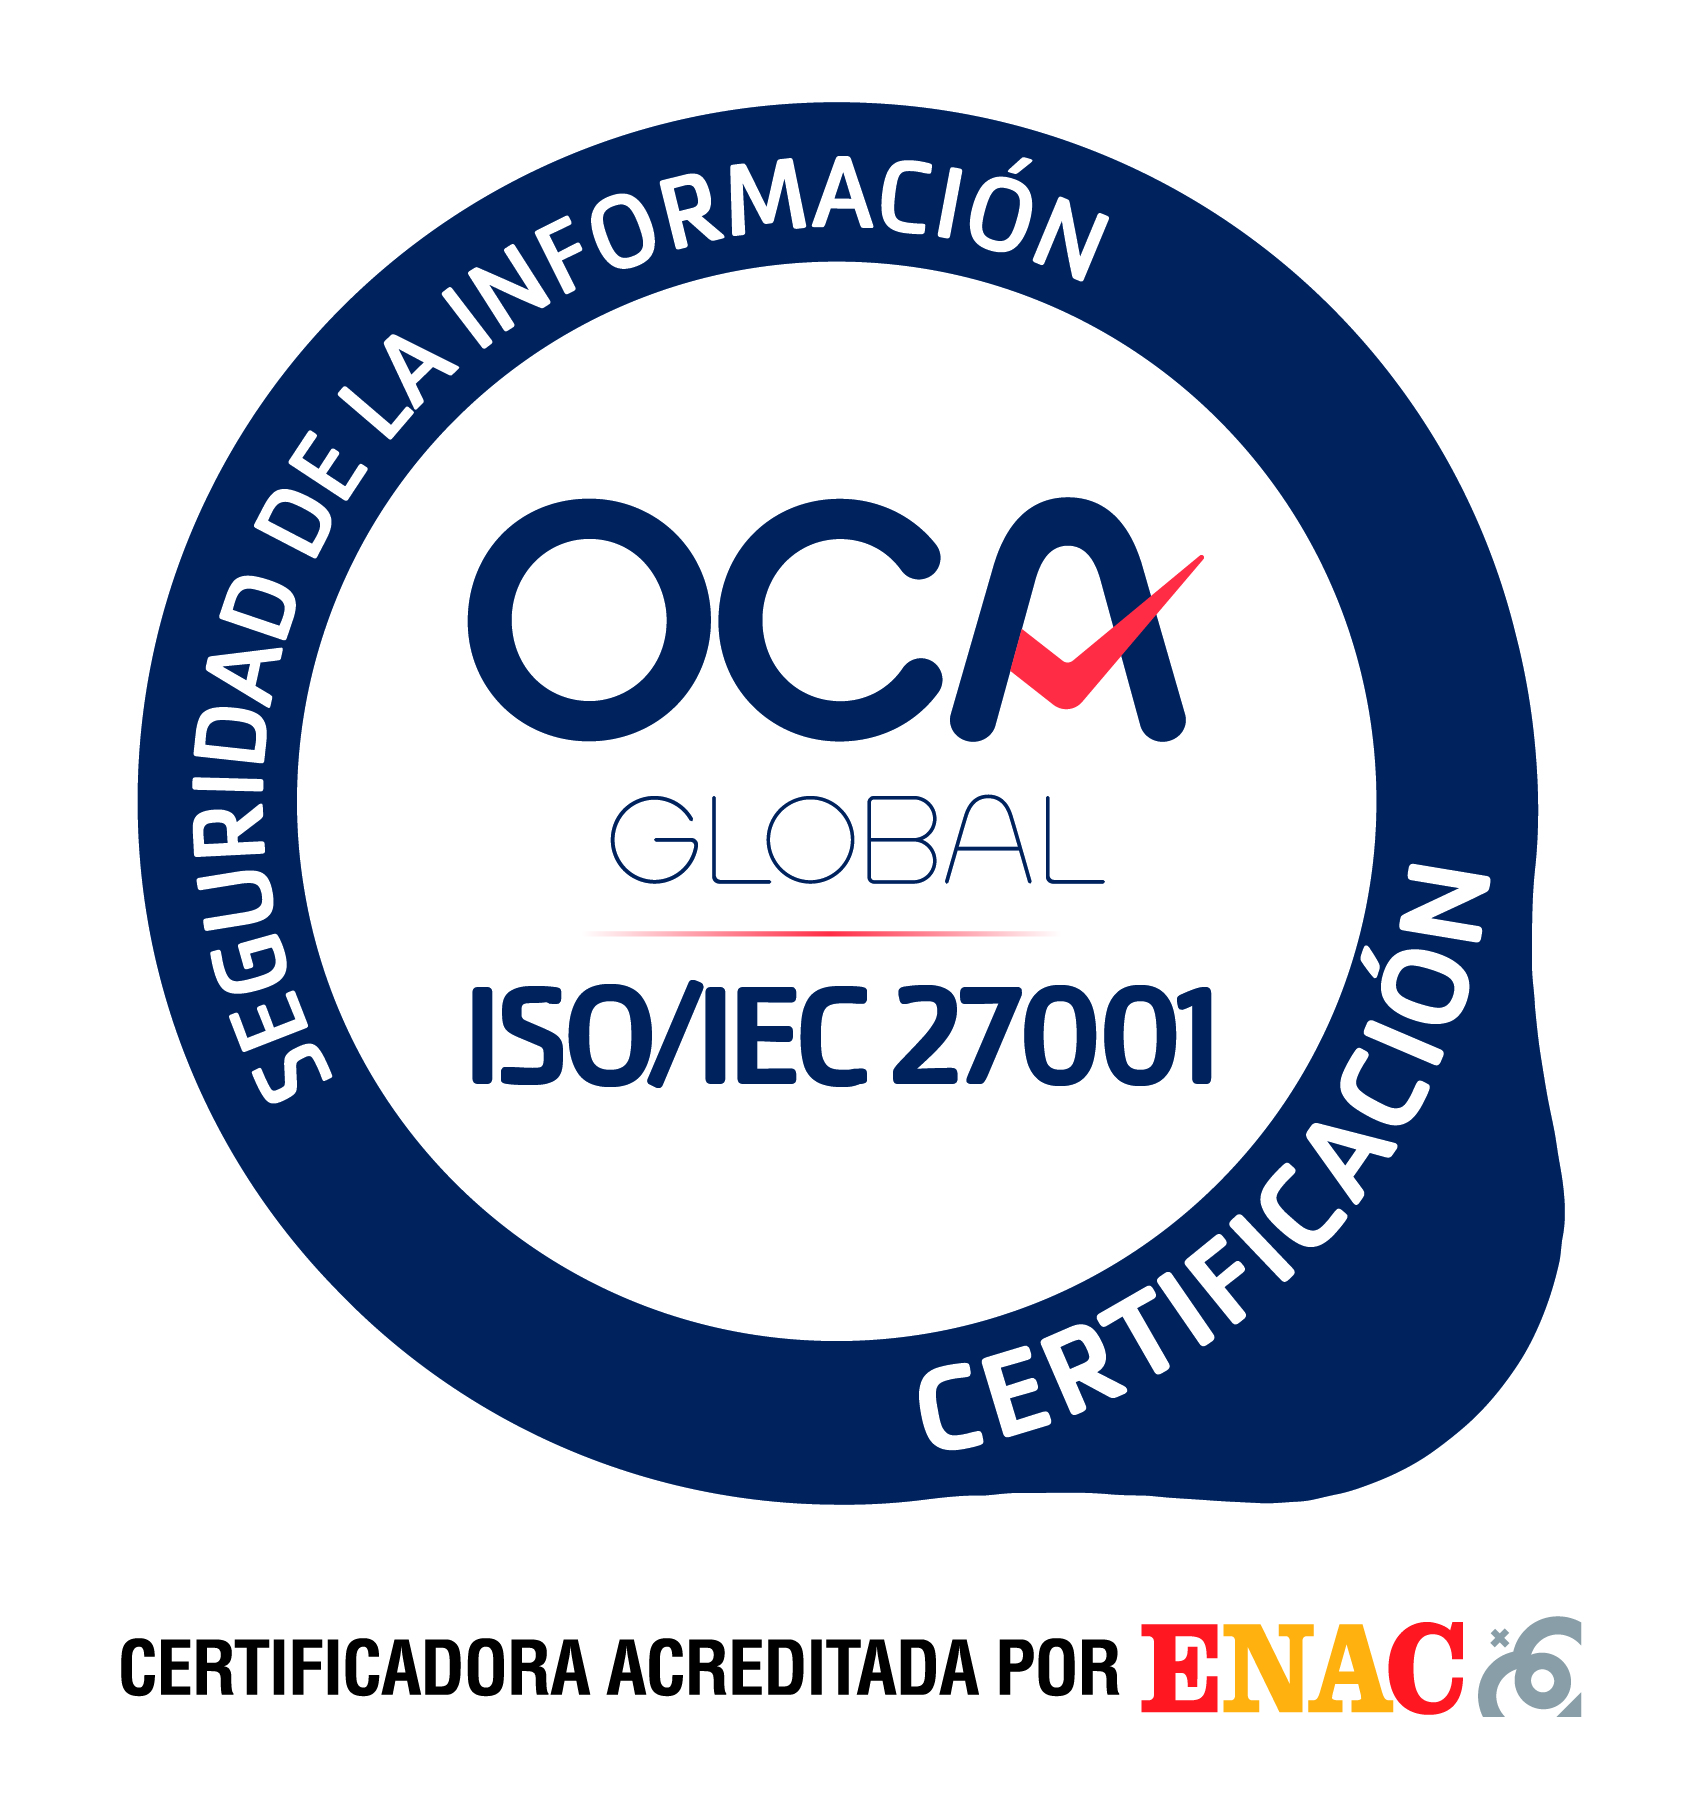 Fotografía del logotipo de la certificación